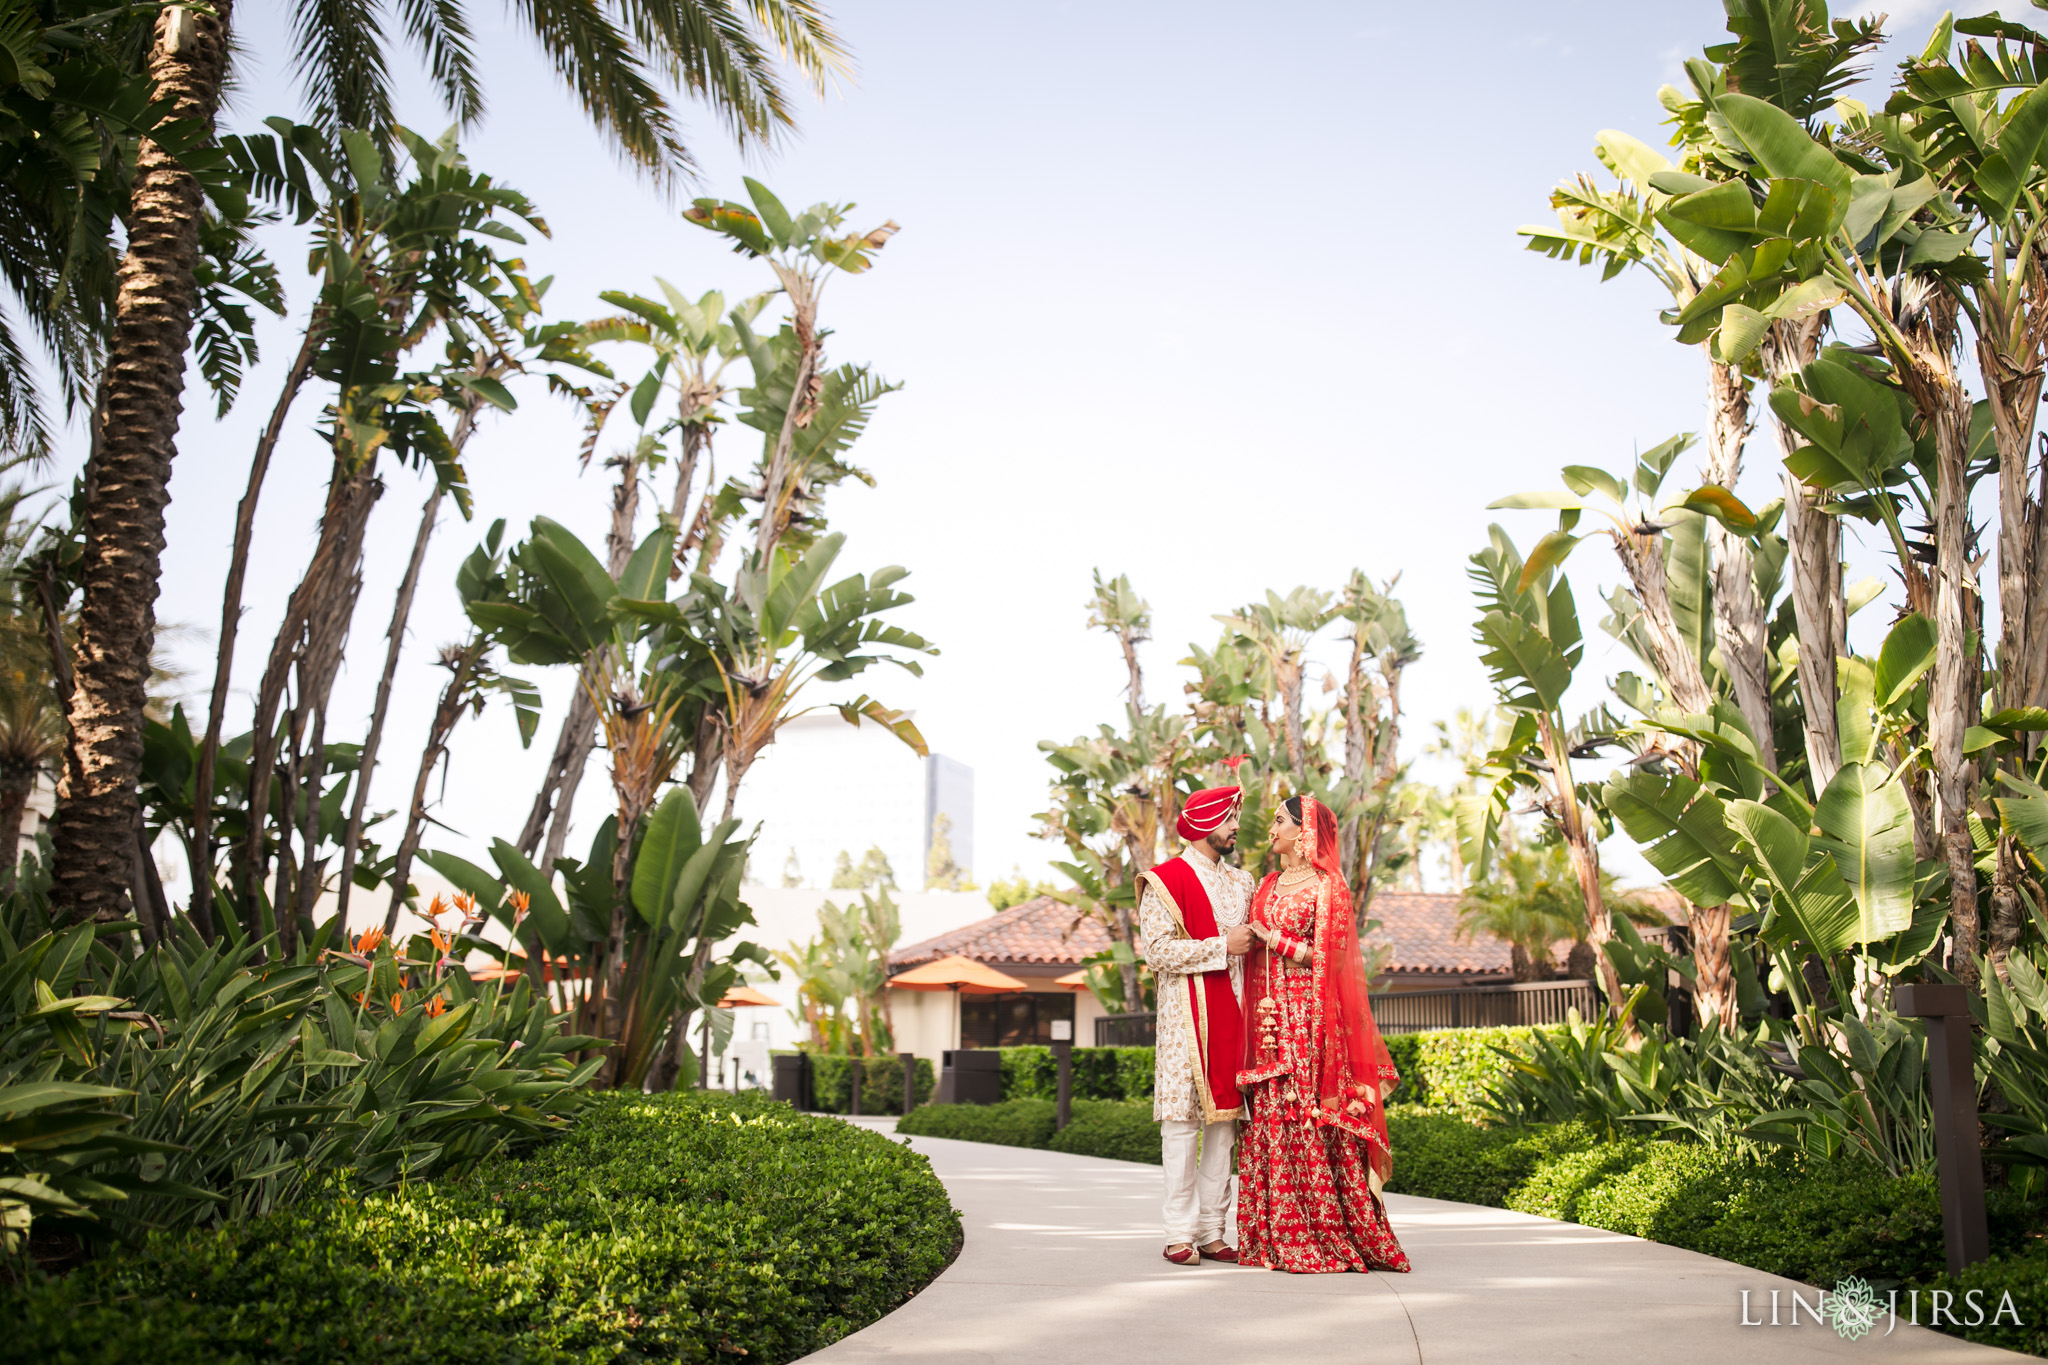 11 Hotel Irvine Punjabi Hindu Indian Wedding Photography